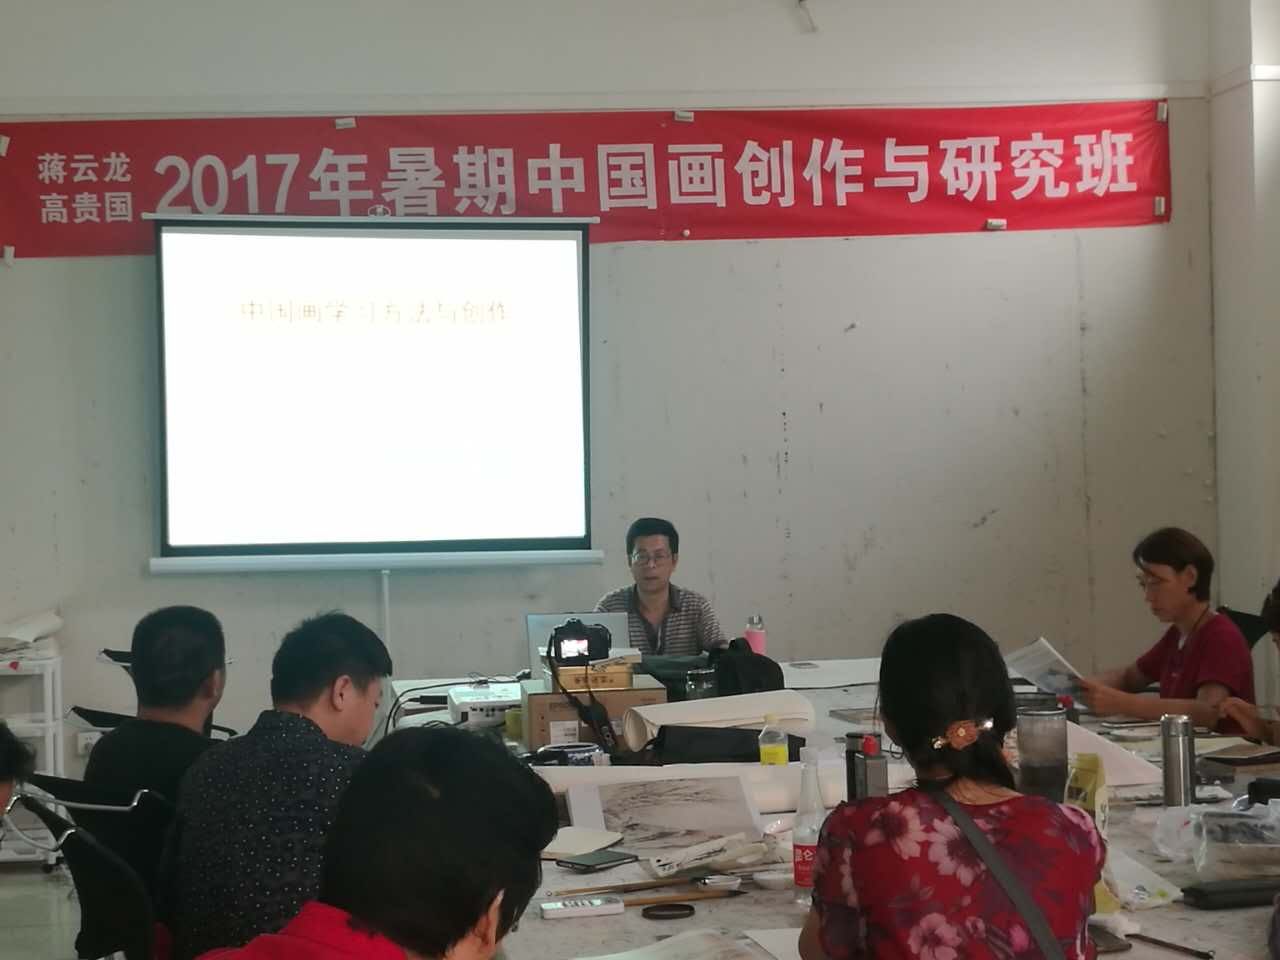 蒋云龙、高贵国工作室2017年暑期中国画创作